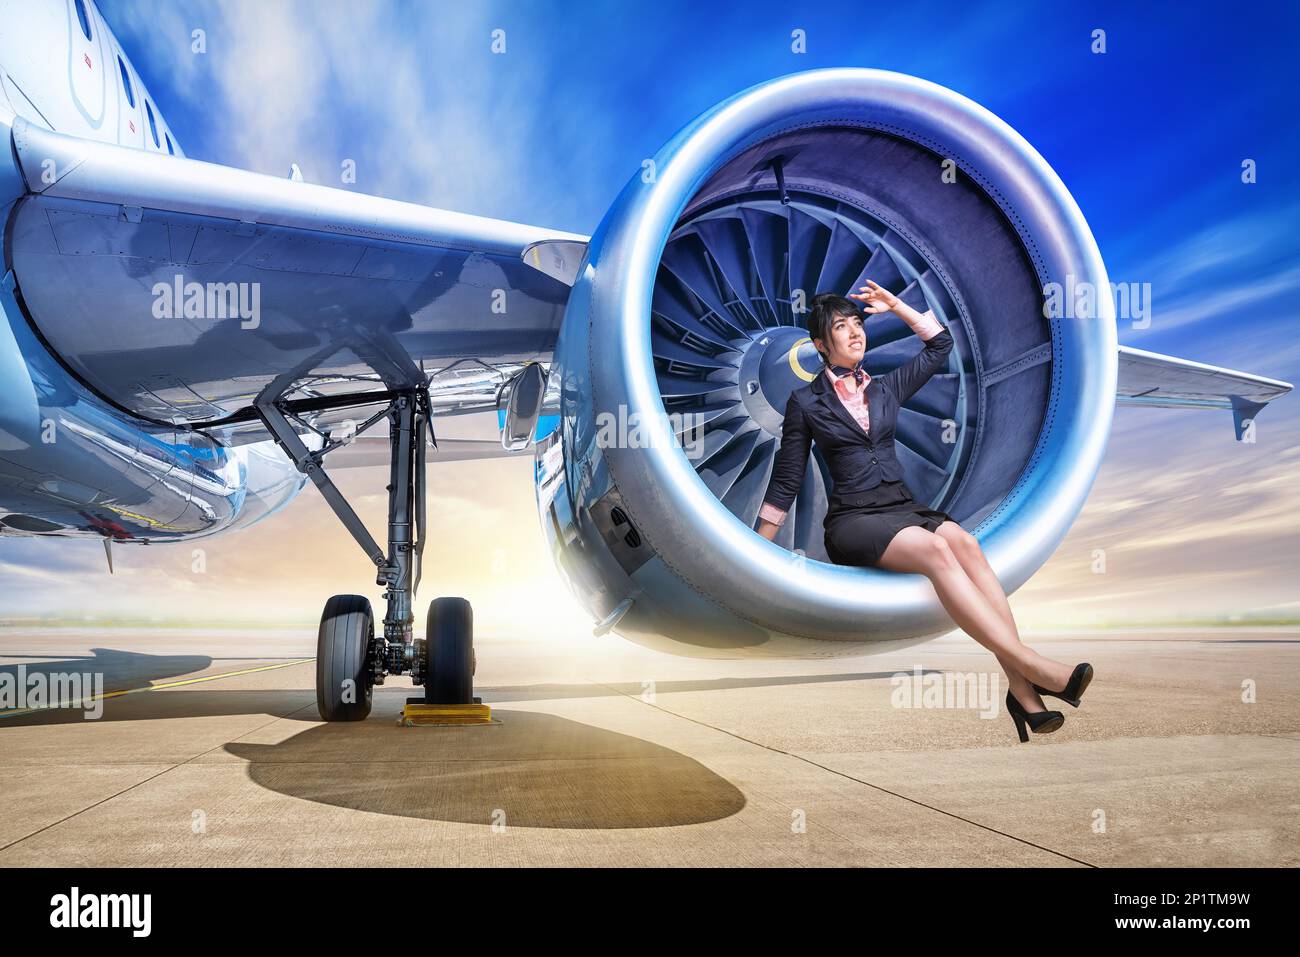 donna seduta in una turbina di un aereo Foto Stock